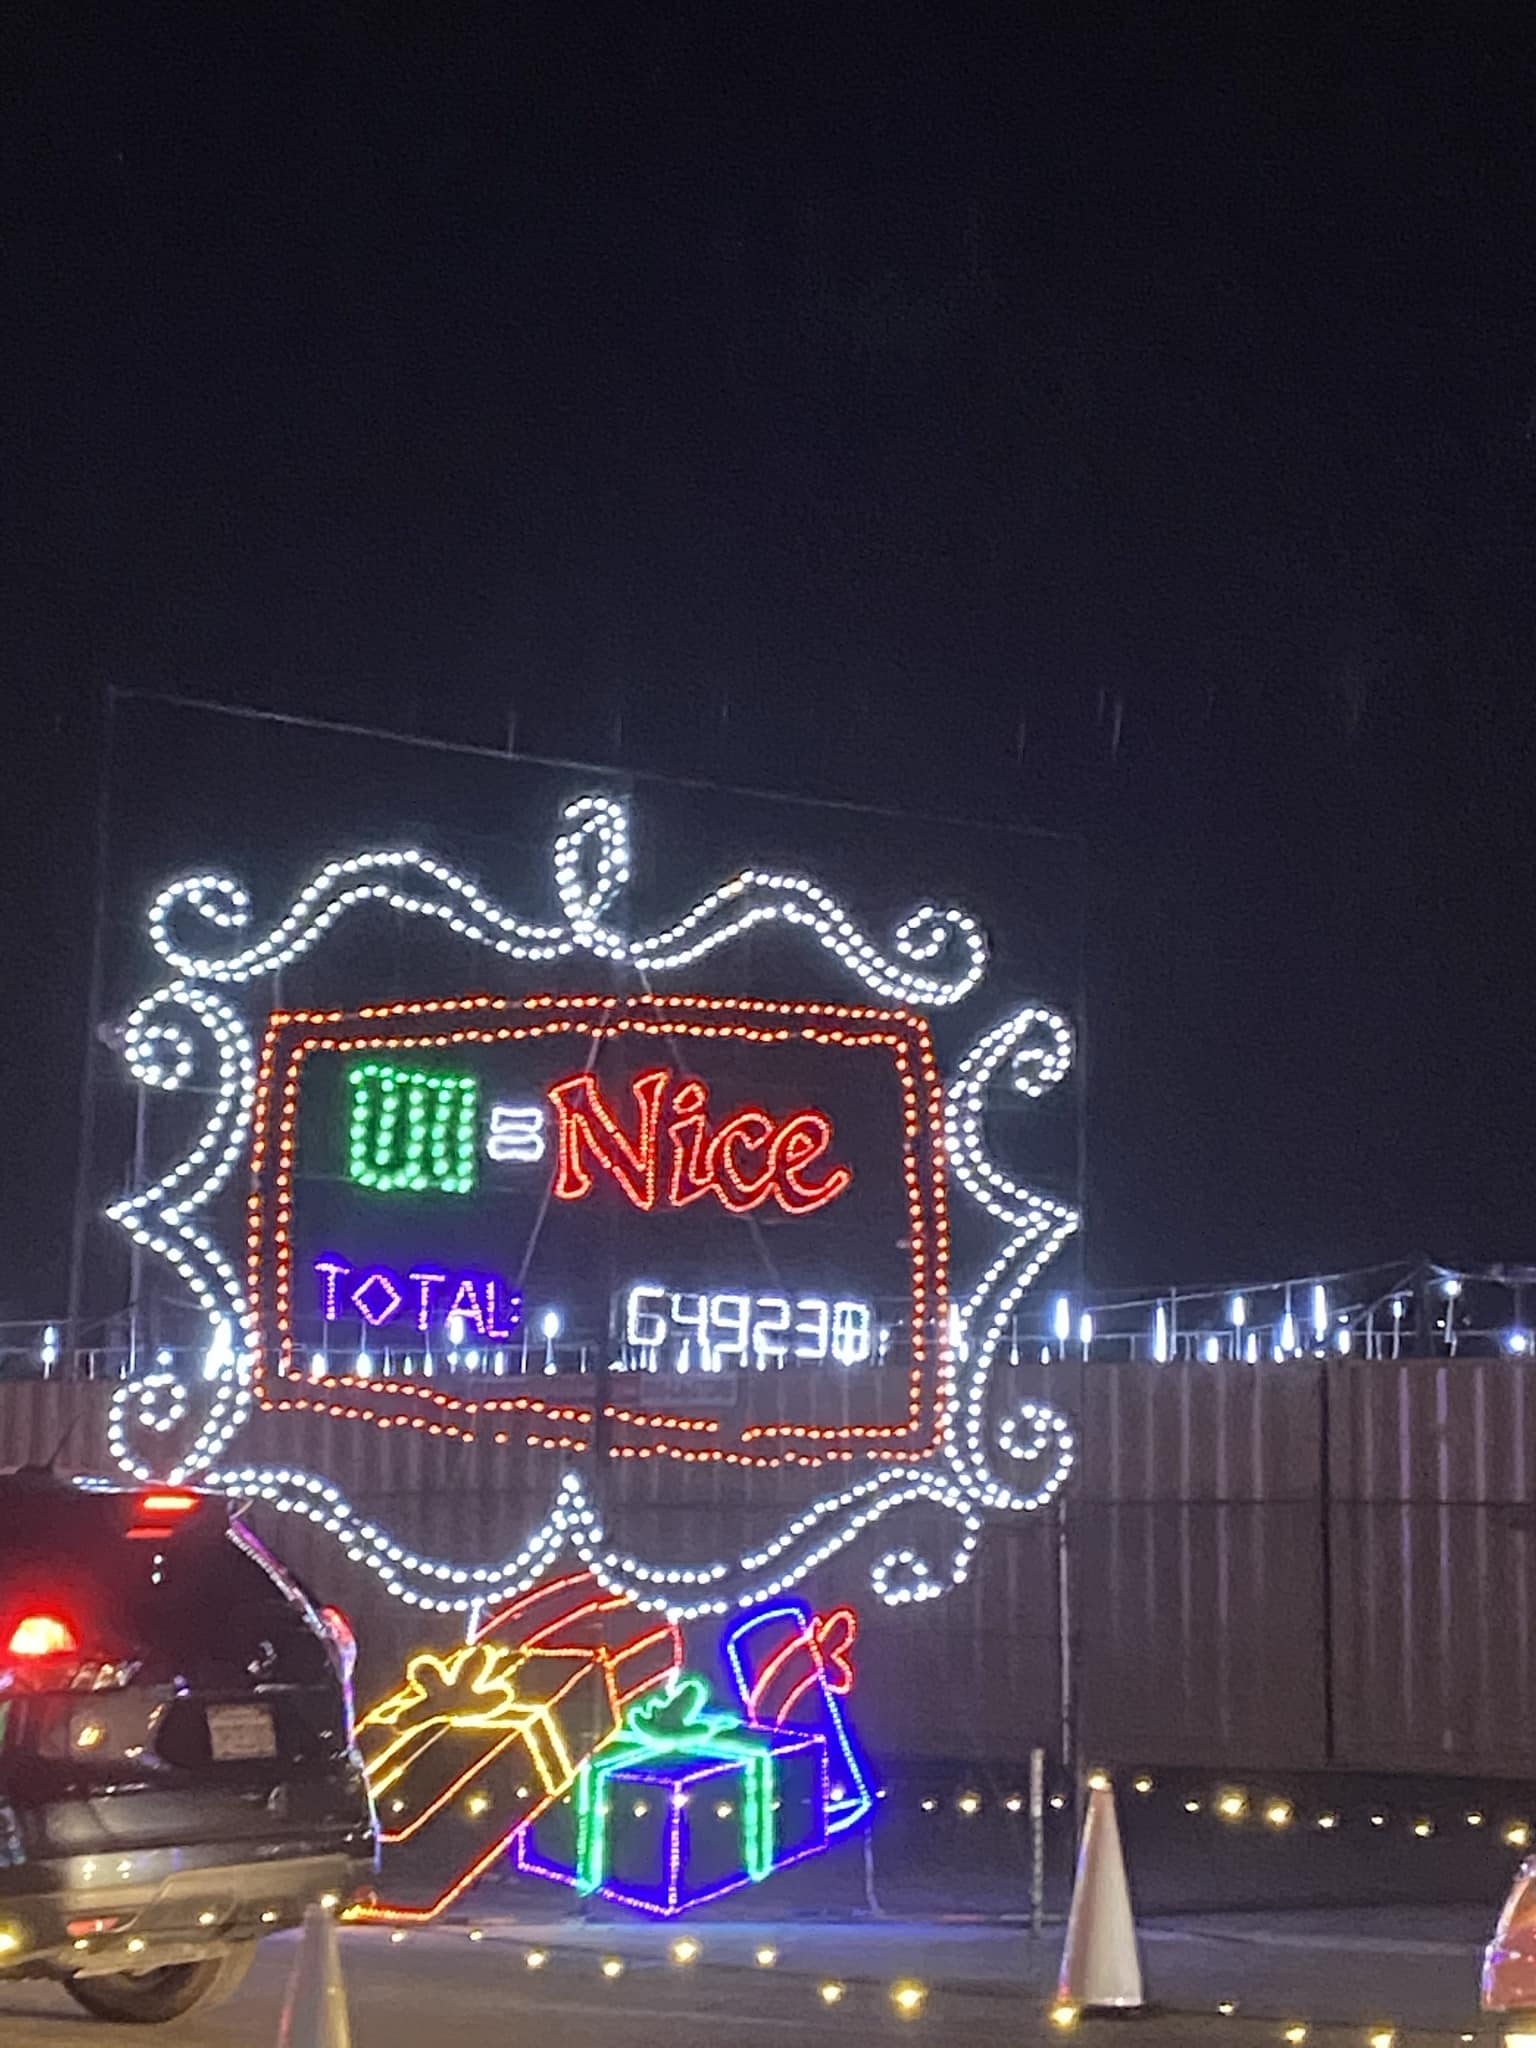 Naughty or Nice List Christmas lights display